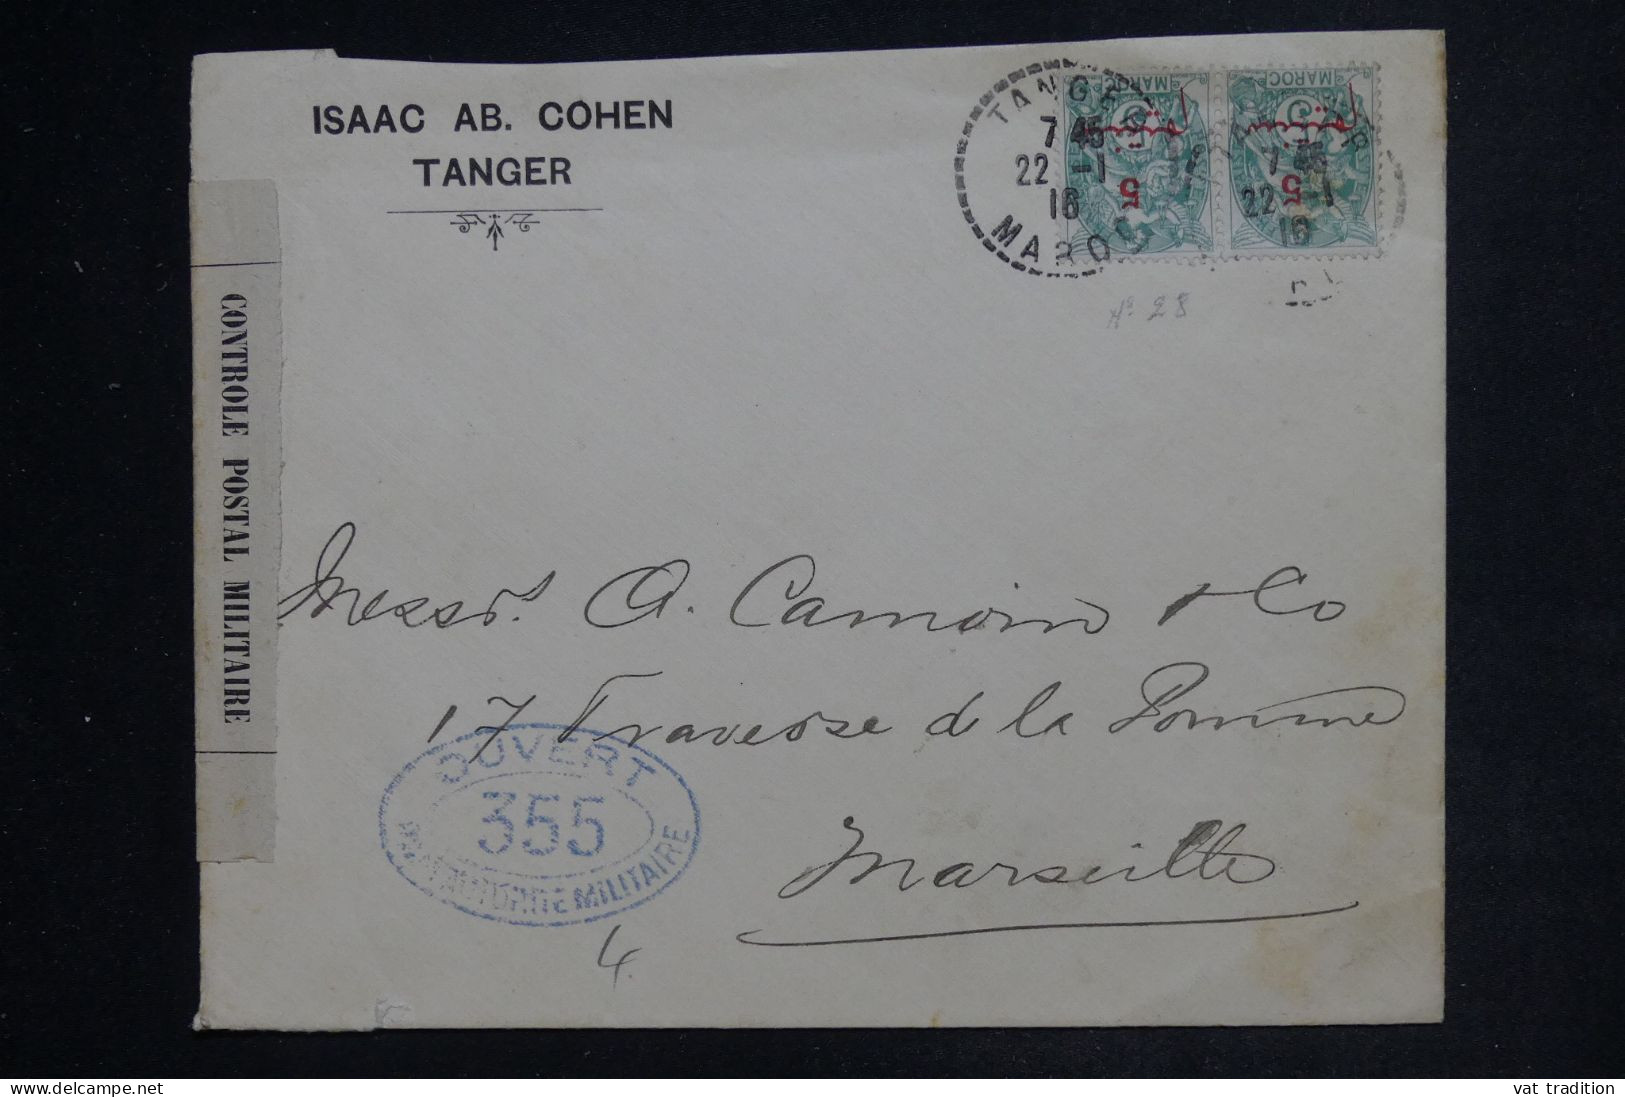 MAROC - Enveloppe Commerciale De Tanger Pour Marseille En 1916 Avec Contrôle Postal - L 152472 - Briefe U. Dokumente